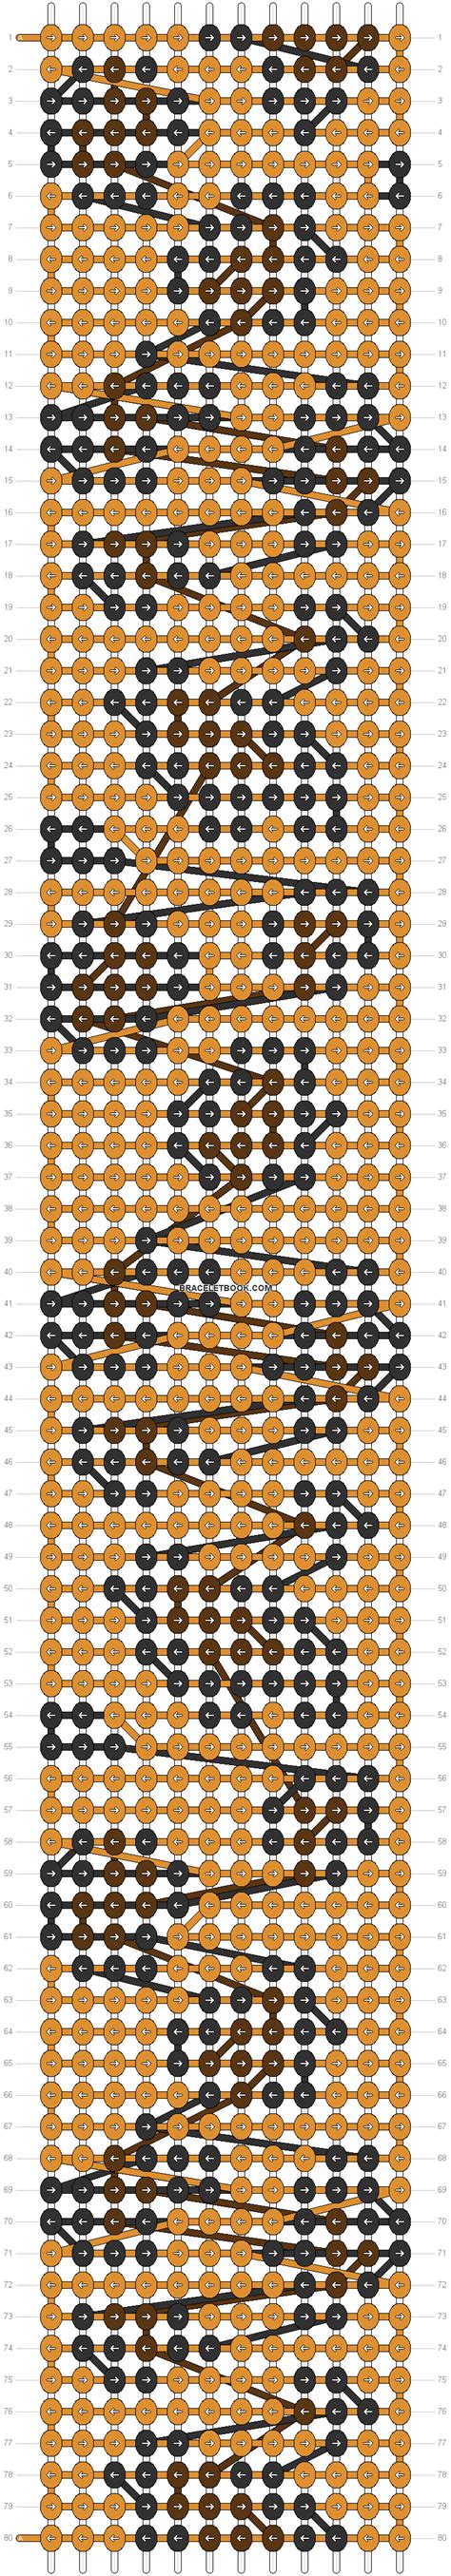 Alpha pattern #19411 pattern | Alpha patterns, Pattern ...